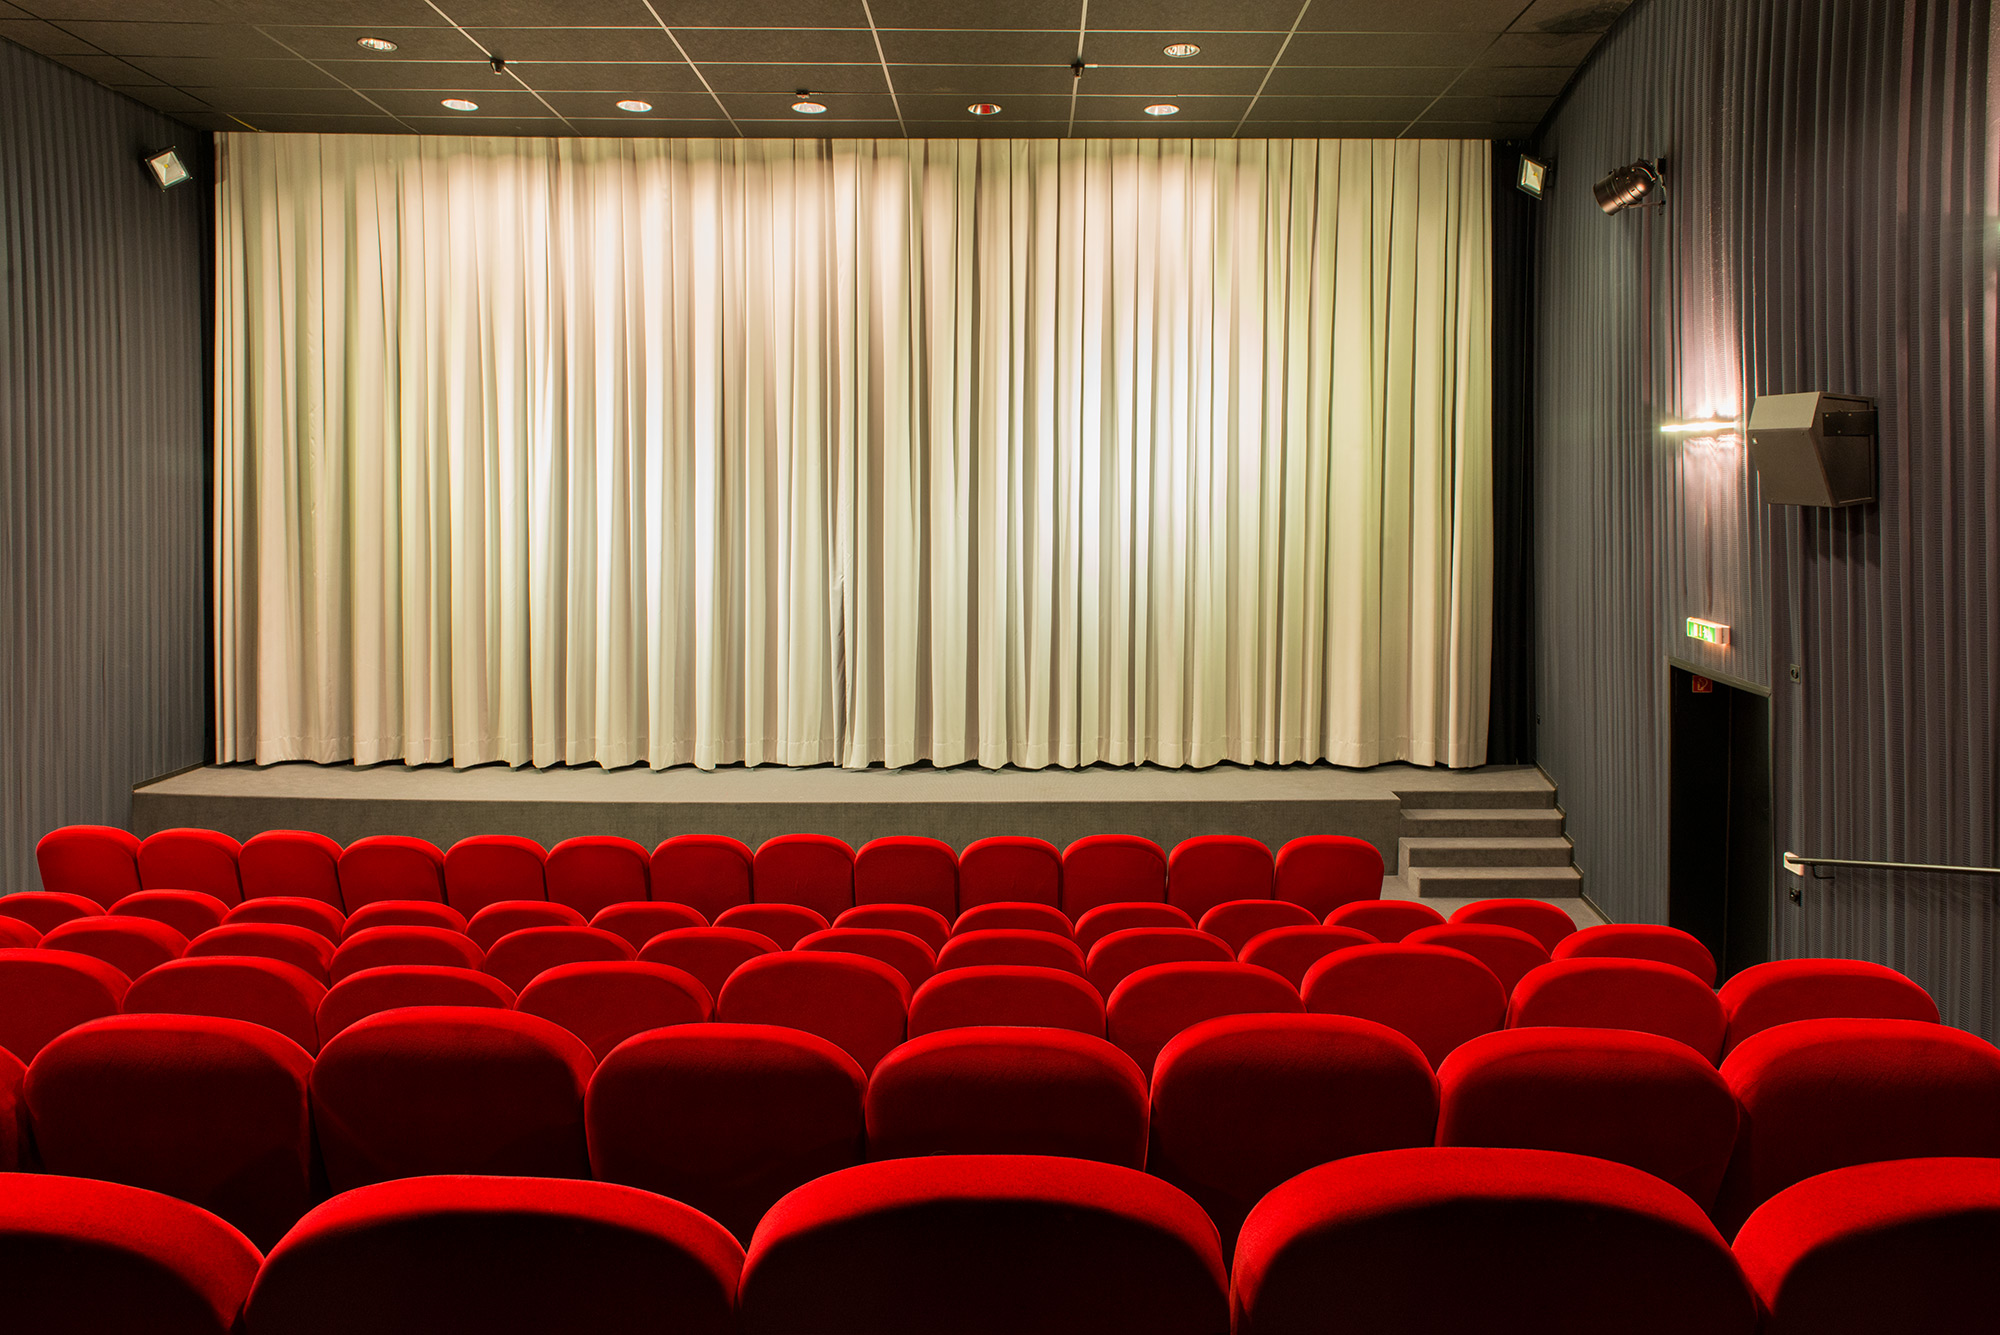 Auch kleinere Kinos können großzügig sein: Kino 5 mit 105 Plätzen